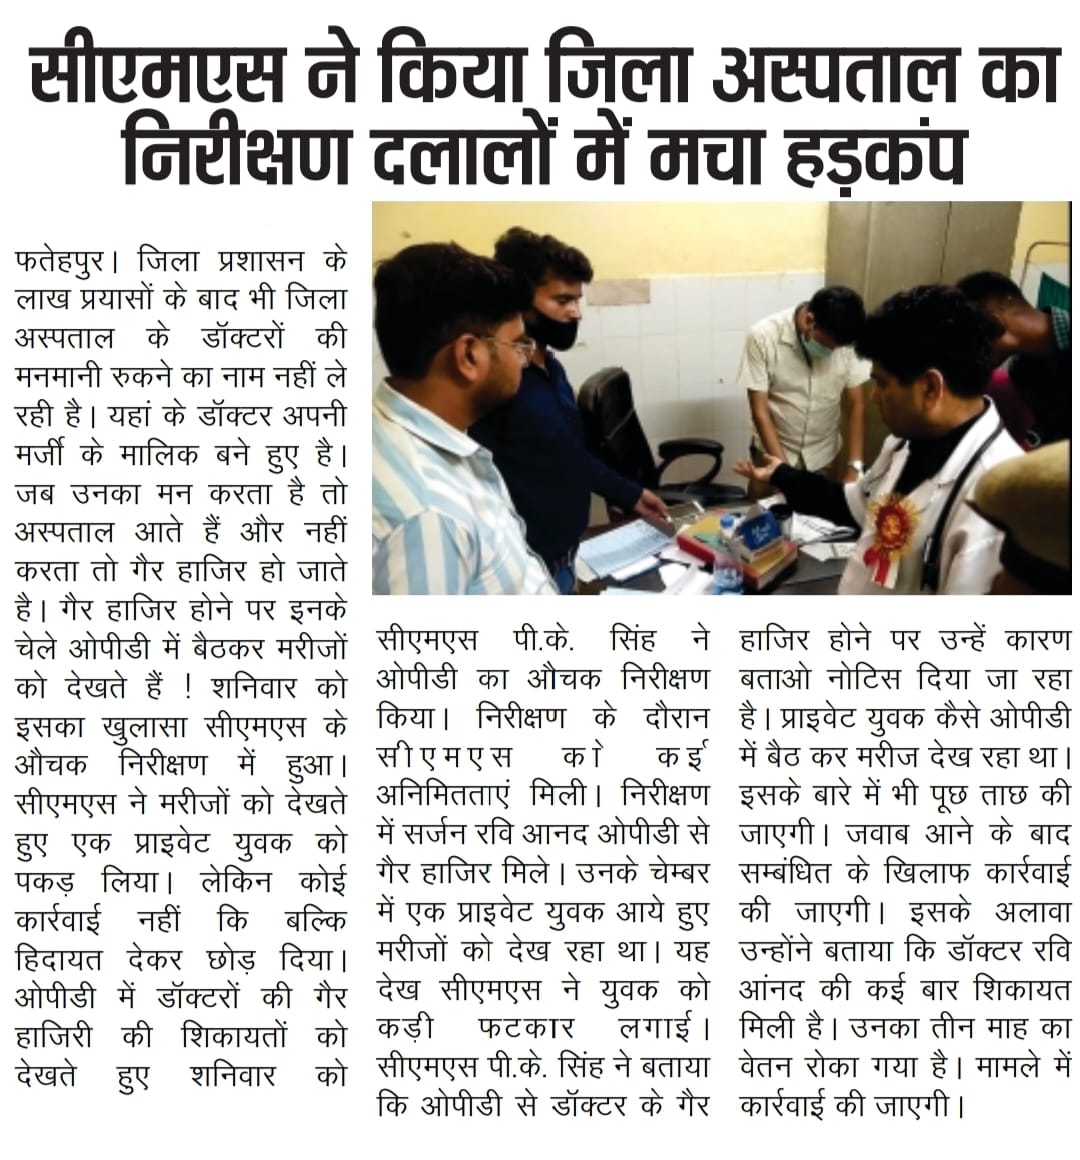 #फतेहपुर 
चिकित्सा व्यवस्था का बुरा हाल! जिला अस्पताल में सर्जन की जगह ओपीडी करता मिला प्राइवेट शख्स।
#ViralNews 
@PMOIndia 
@HMOIndia 
@myogiadityanath 
@MhfwGoUP 
@UPGovt 
@brajeshpathakup
@CommissionerPrg 
@dmfatehpur 
@AjaiBhadauriya